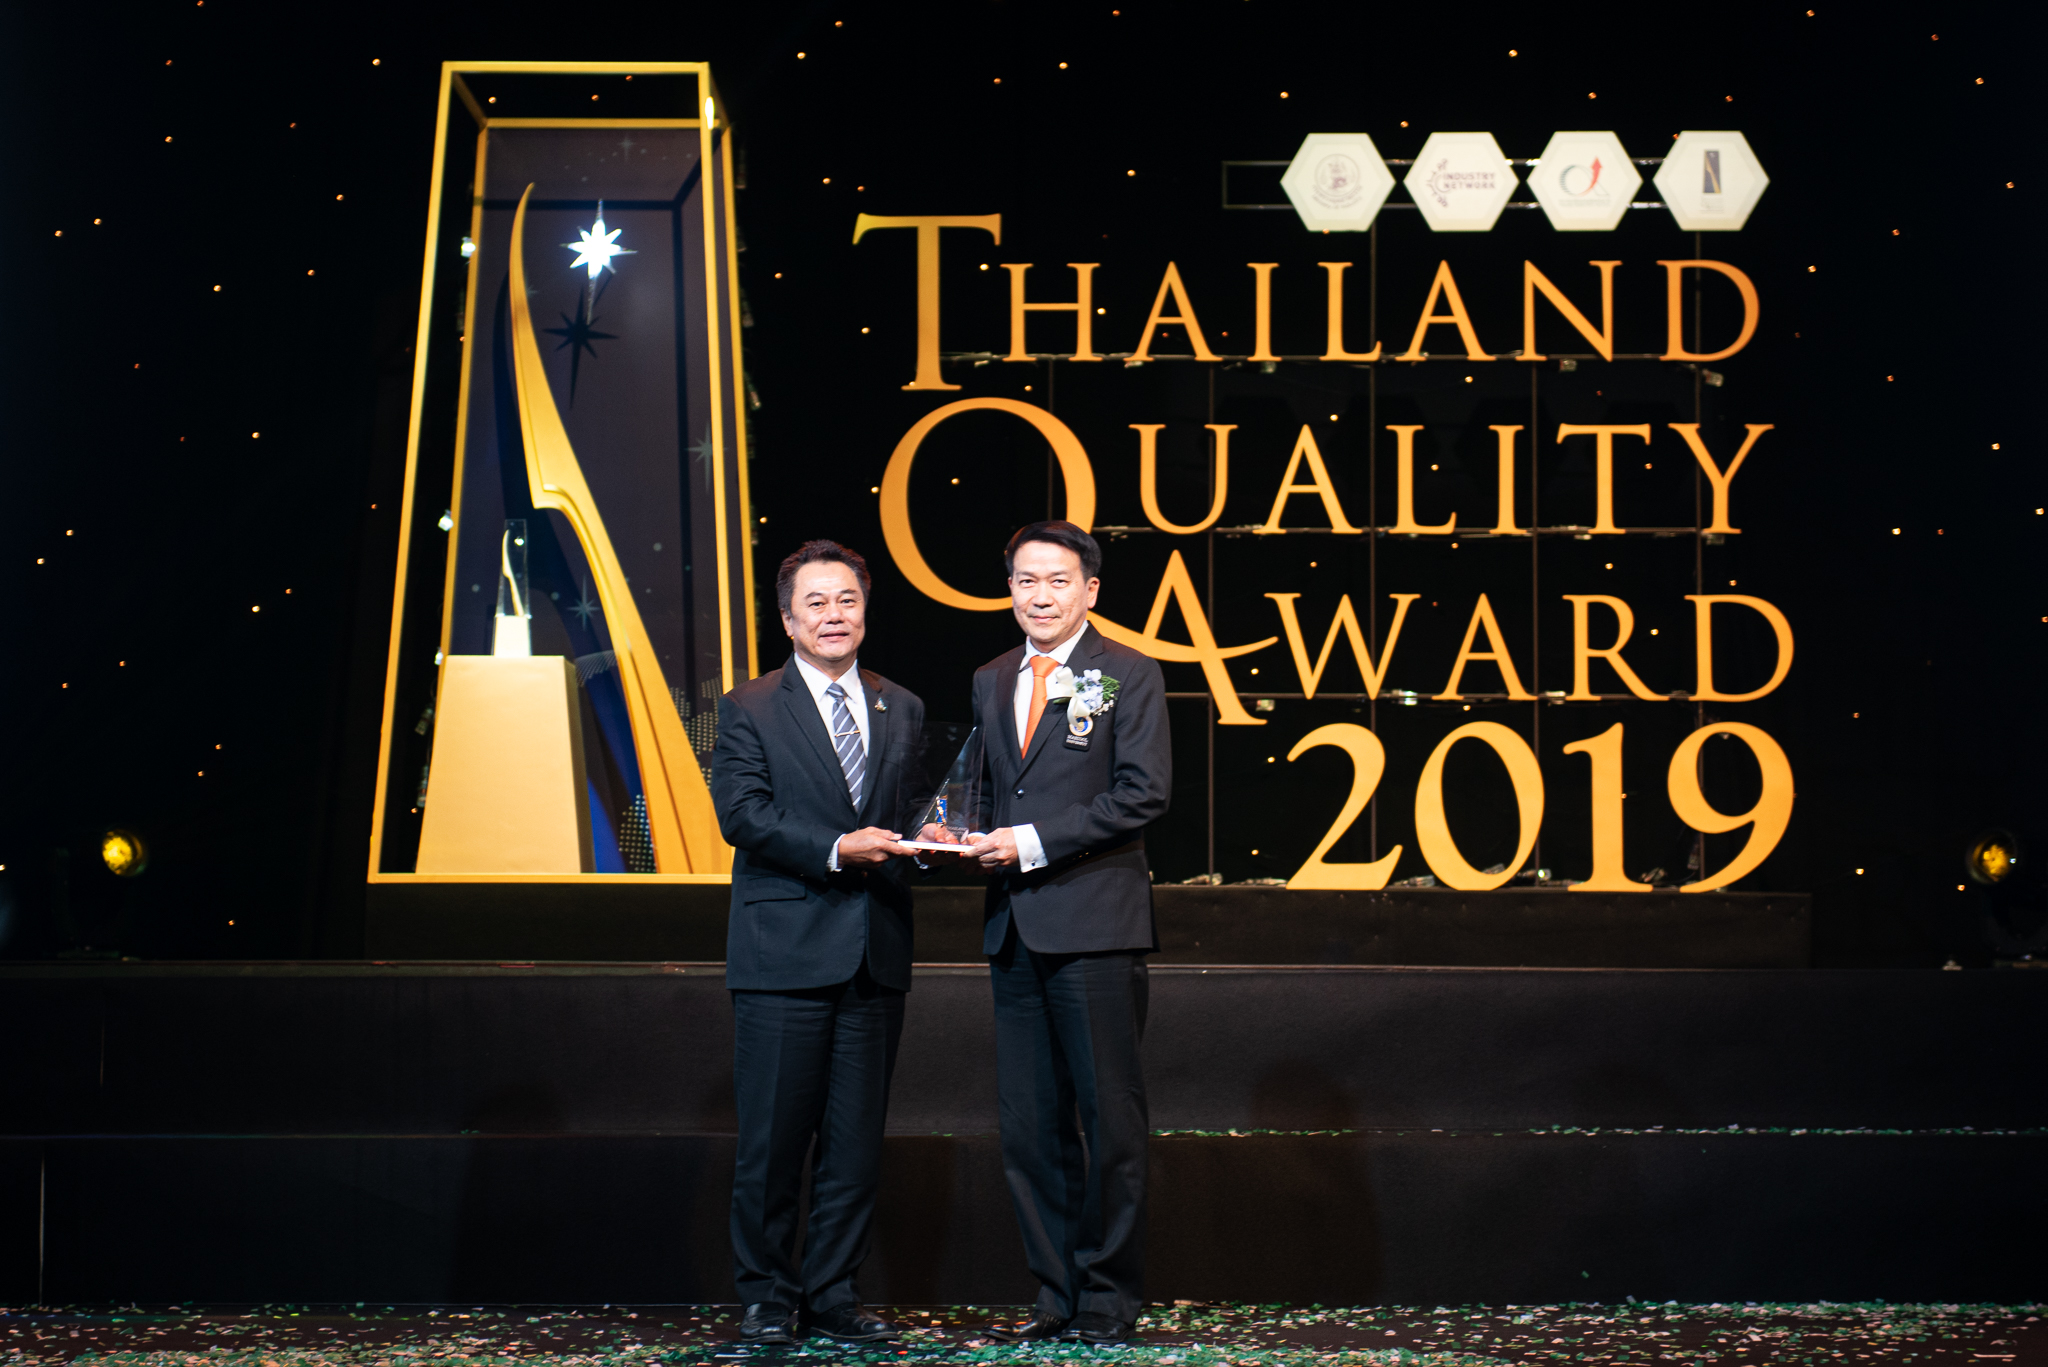 คณะแพทยศาสตร์โรงพยาบาลรามาธิบดี มหาวิทยาลัยมหิดล ได้รับรางวัลการบริหารสู่ความเป็นเลิศ (Thailand Quality Class: TQC) ในงาน พิธีมอบรางวัลคุณภาพเเห่งชาติ (Thailand Quality Award: TQA) ครั้งที่ 18 ประจำปี 2562